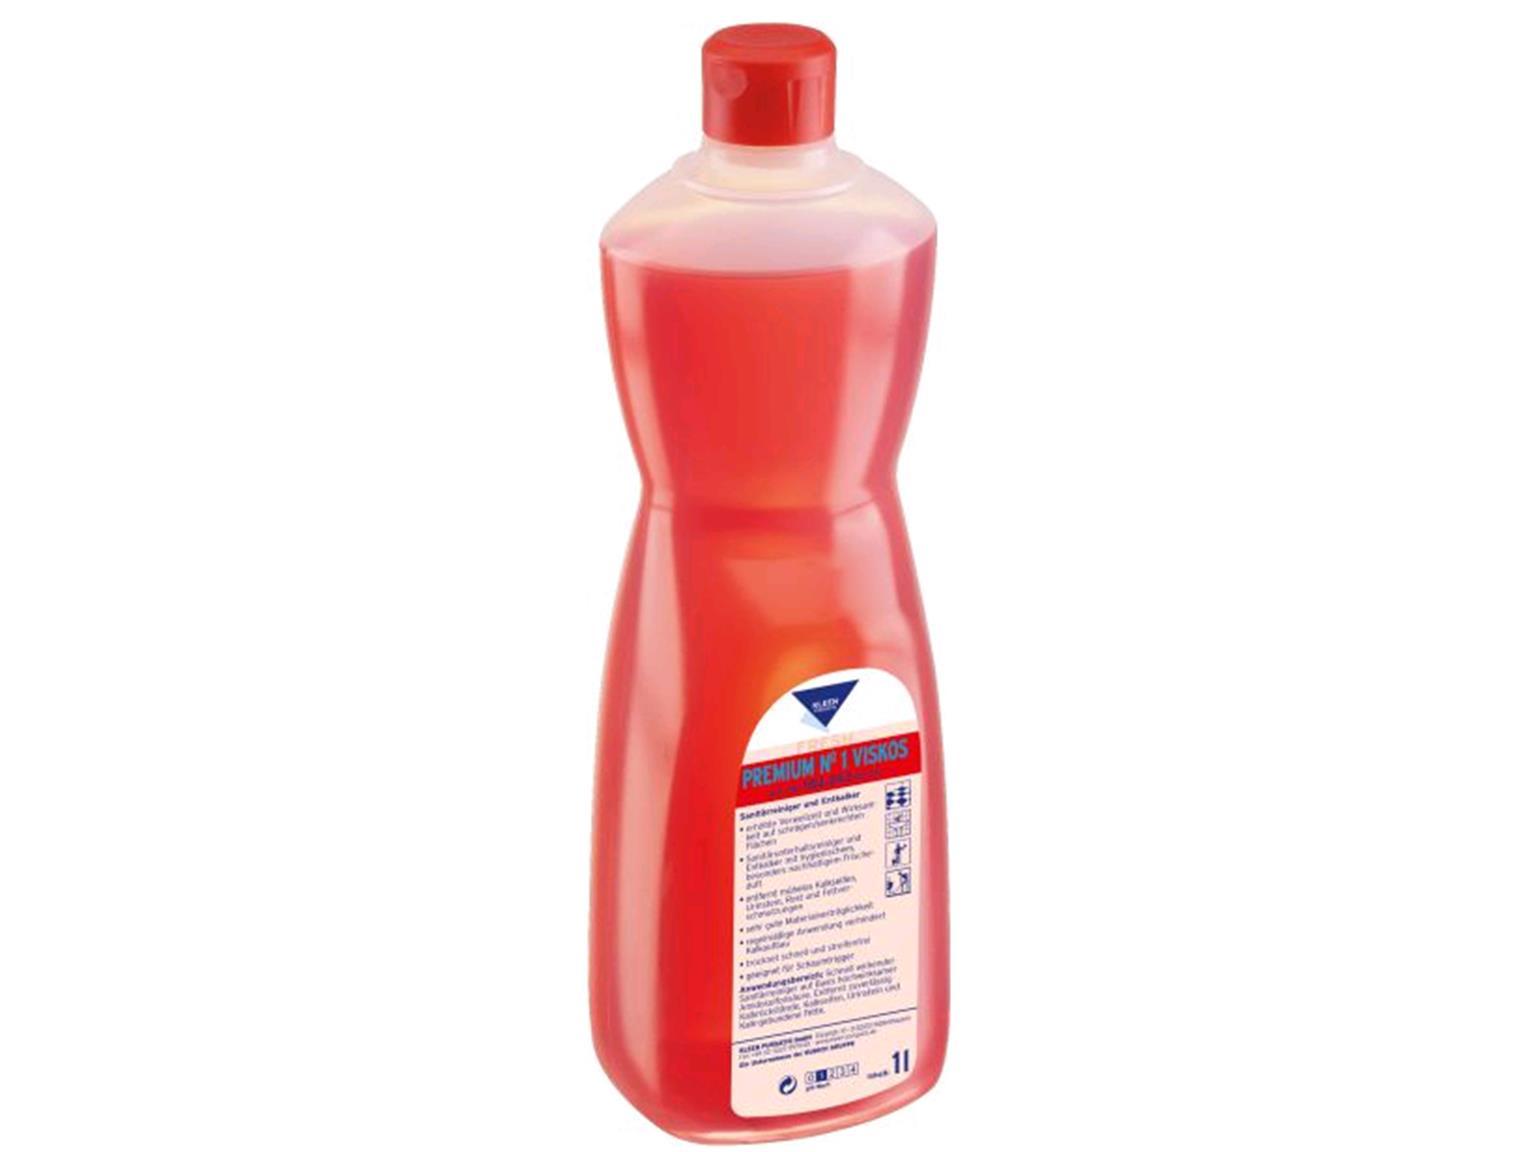 REINIGUNGSMITTEL KLEEN PURGATIS  Sanitärreiniger No. 1, 1 Liter Flasche